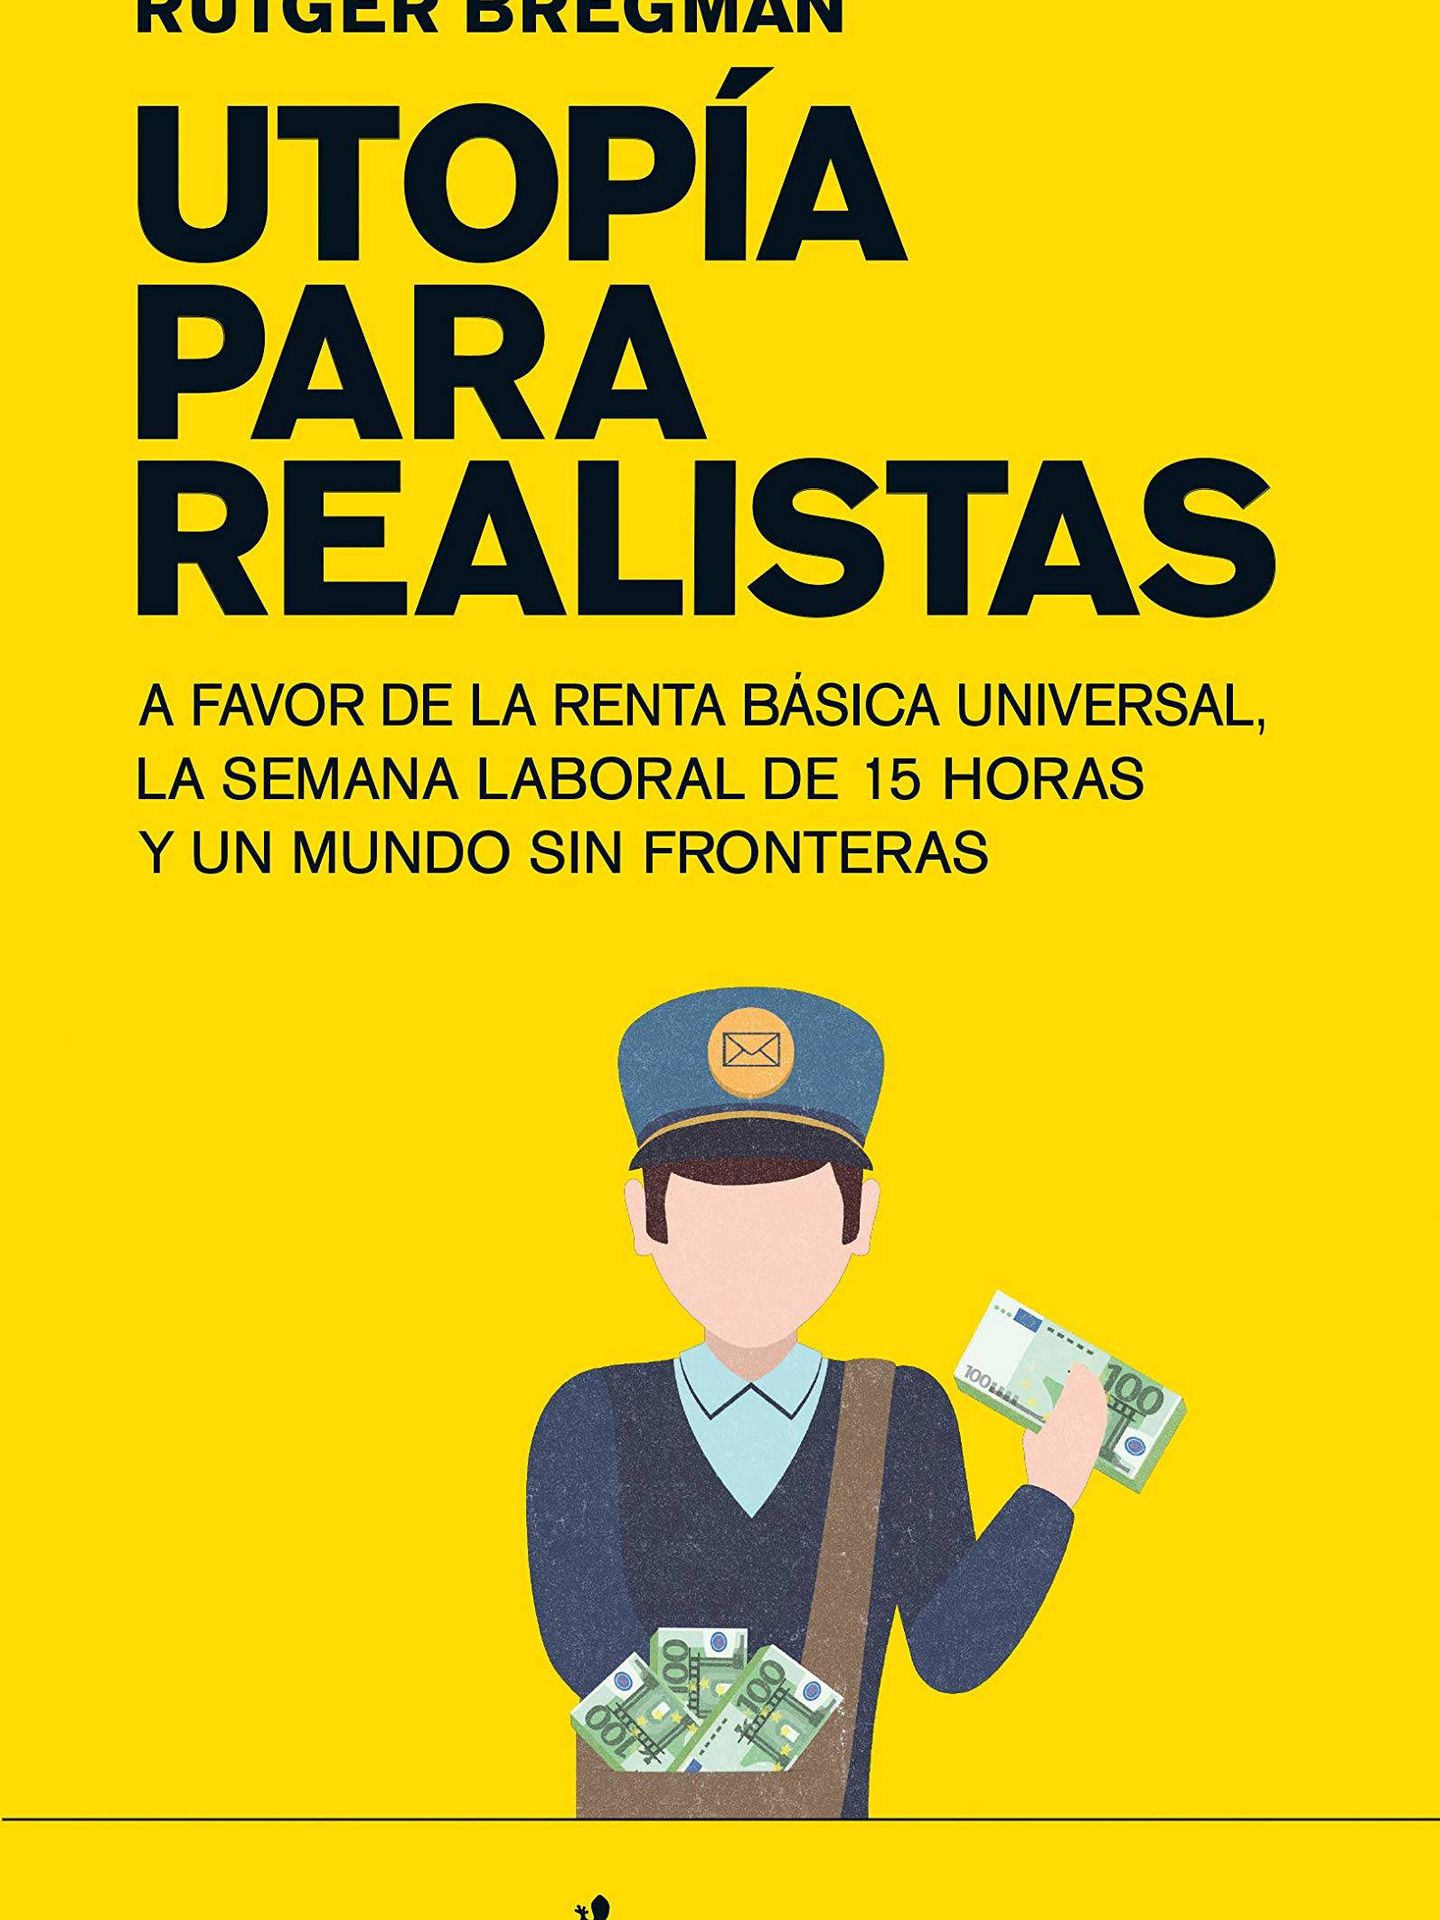 'Utopía para realistas'.